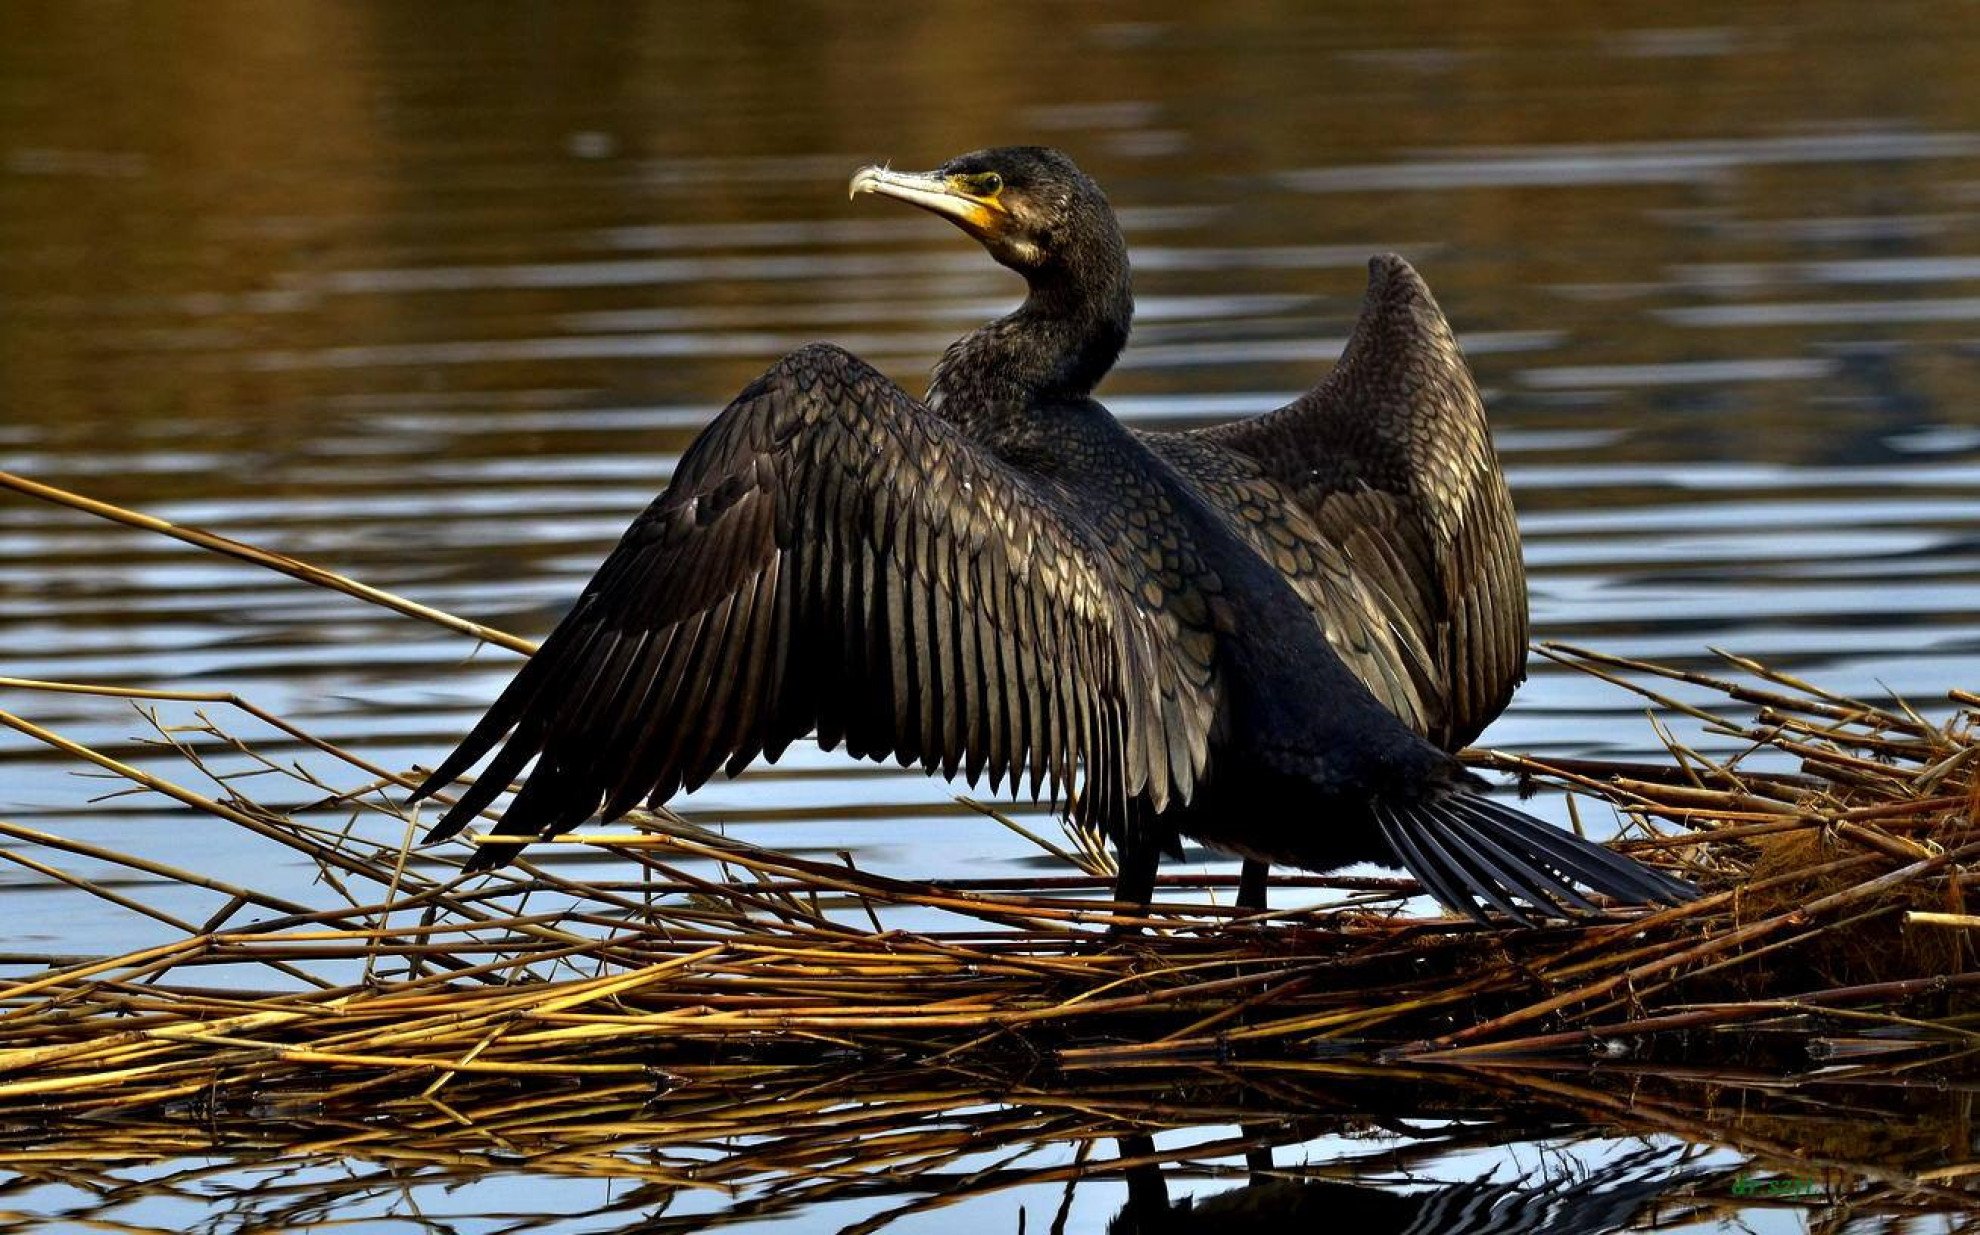  Cormoranul mare va fi putea fi vânat în România pe tot parcursul anului